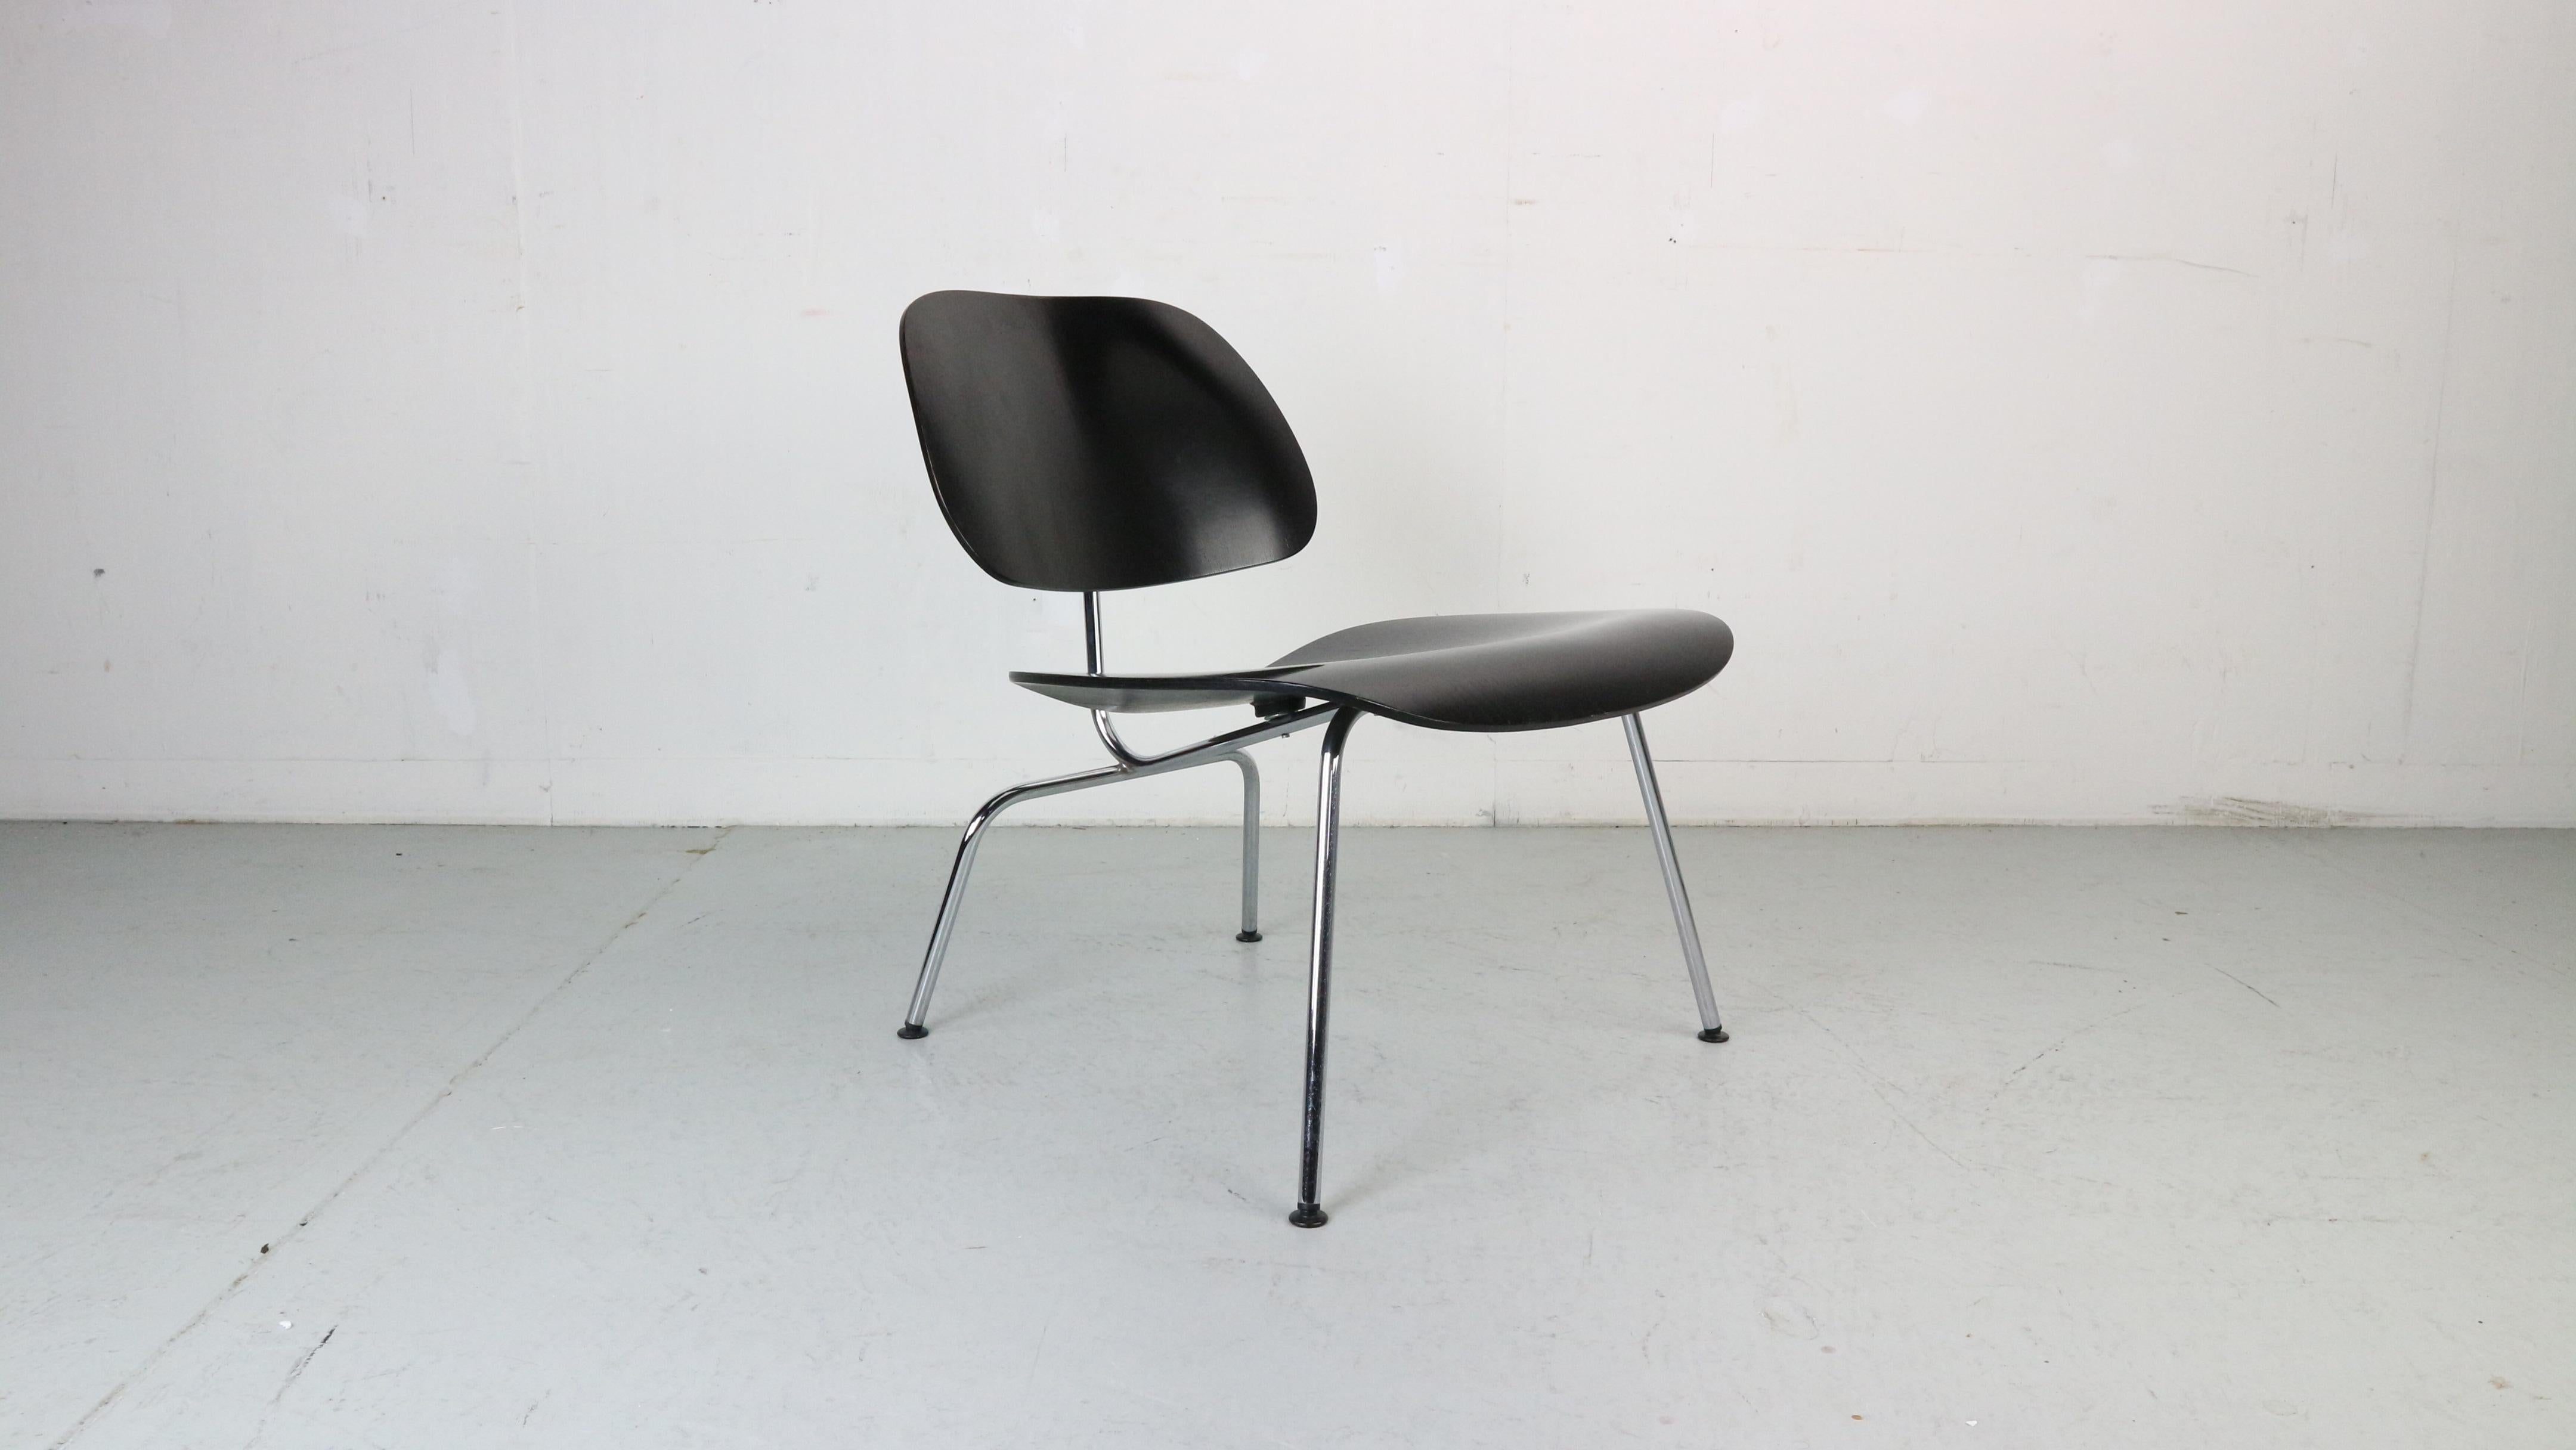 Chaise longue conçue par Charles et Ray Eames pour Vitra, 1999.

La chaise LCM de Vitra, conçue par Charles et Ray Eames, est le résultat d'années d'expérimentation au cours desquelles les designers ont cherché de nouveaux procédés pour adapter au